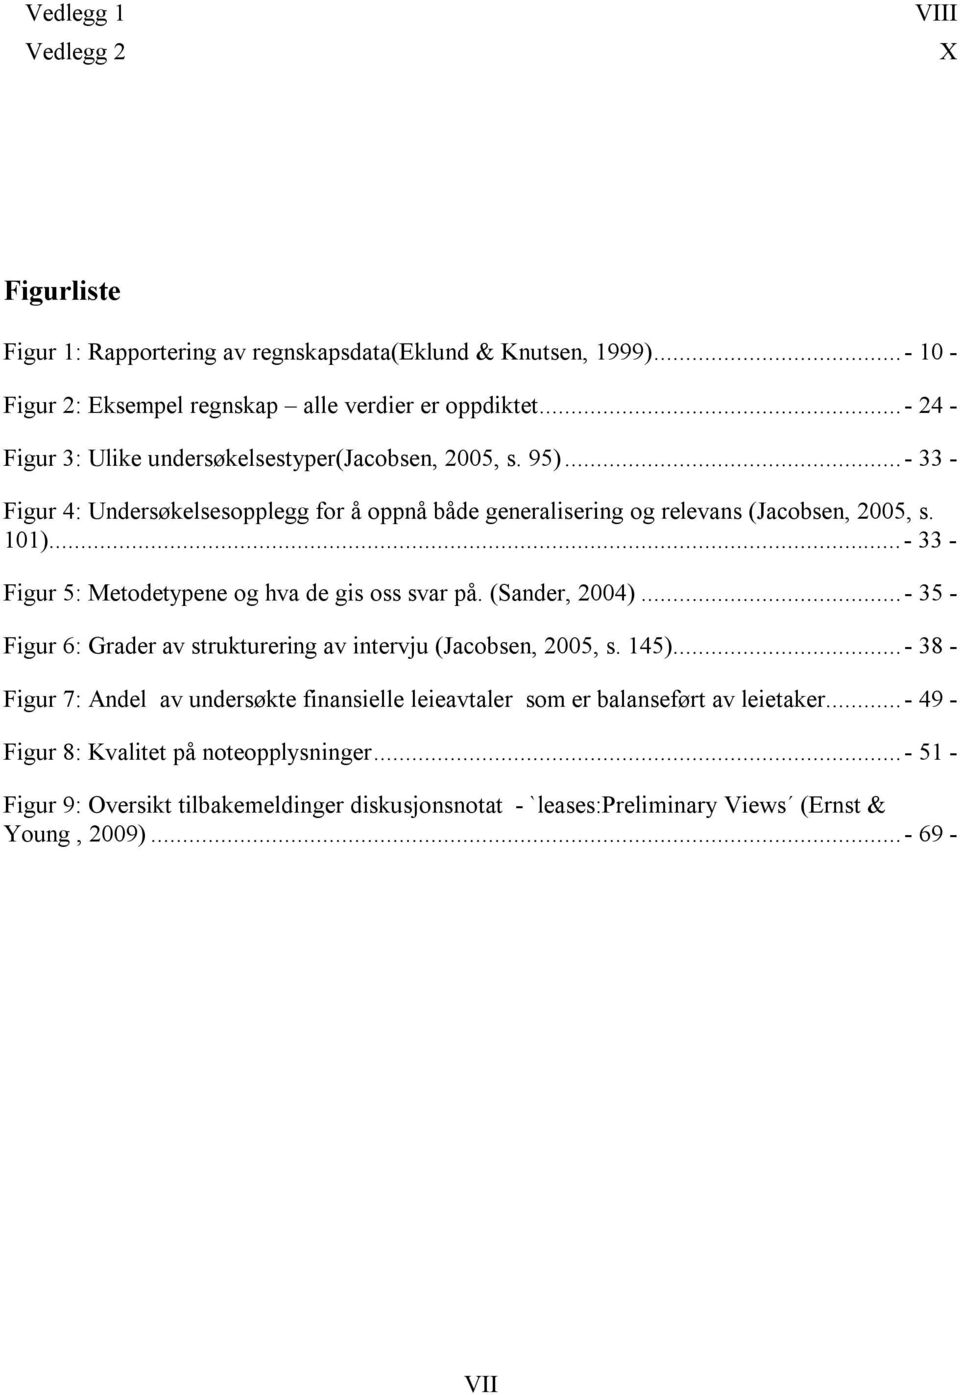 .. - 33 - Figur 5: Metodetypene og hva de gis oss svar på. (Sander, 2004)... - 35 - Figur 6: Grader av strukturering av intervju (Jacobsen, 2005, s. 145).